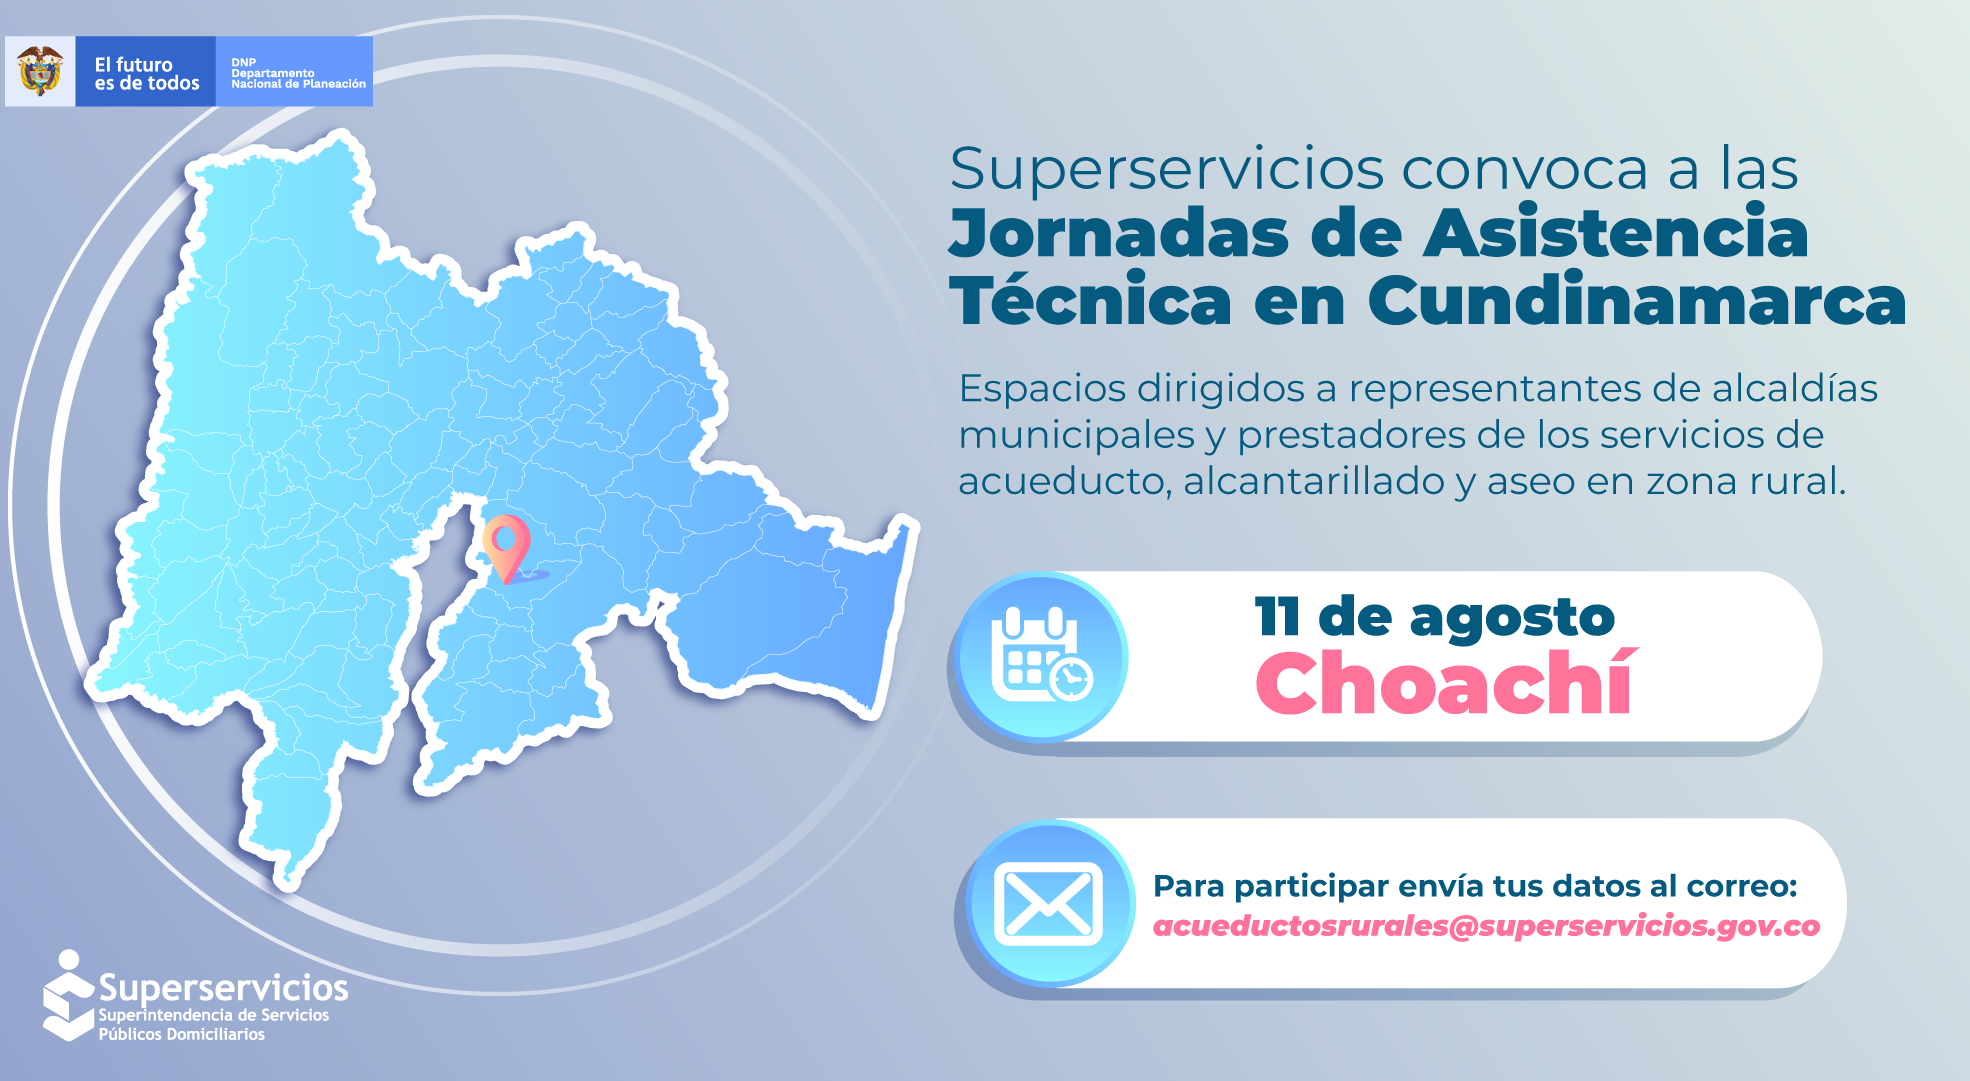 Jornadas de Asistencia Técnica para representantes de alcaldías municipales y prestadores de los servicios acueducto, alcantarillado y aseo en Choachí, Cundinamarca
